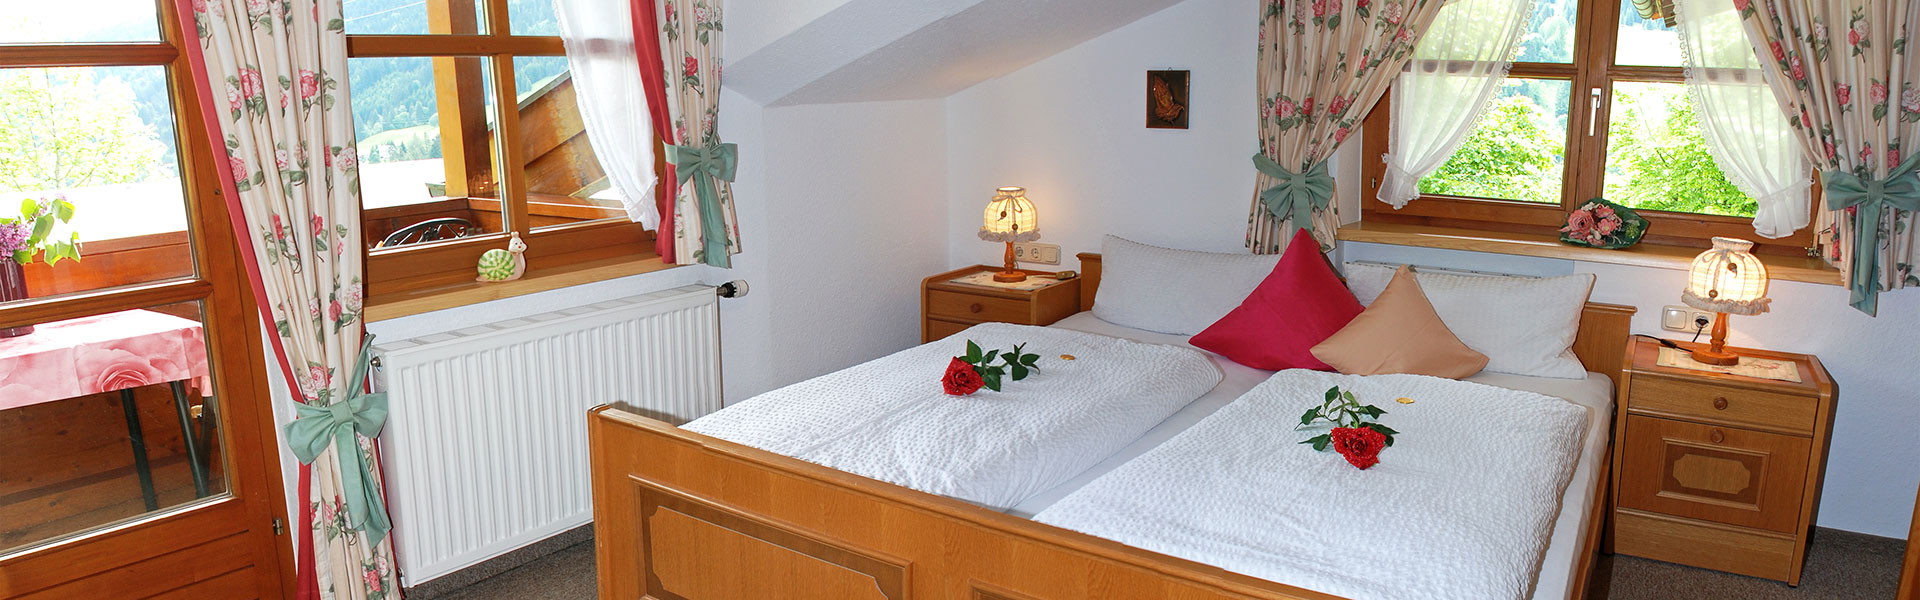 Doppelbett mit Balkonzugang - Ferienwohnung Nebelhorn Kleinwalsertal